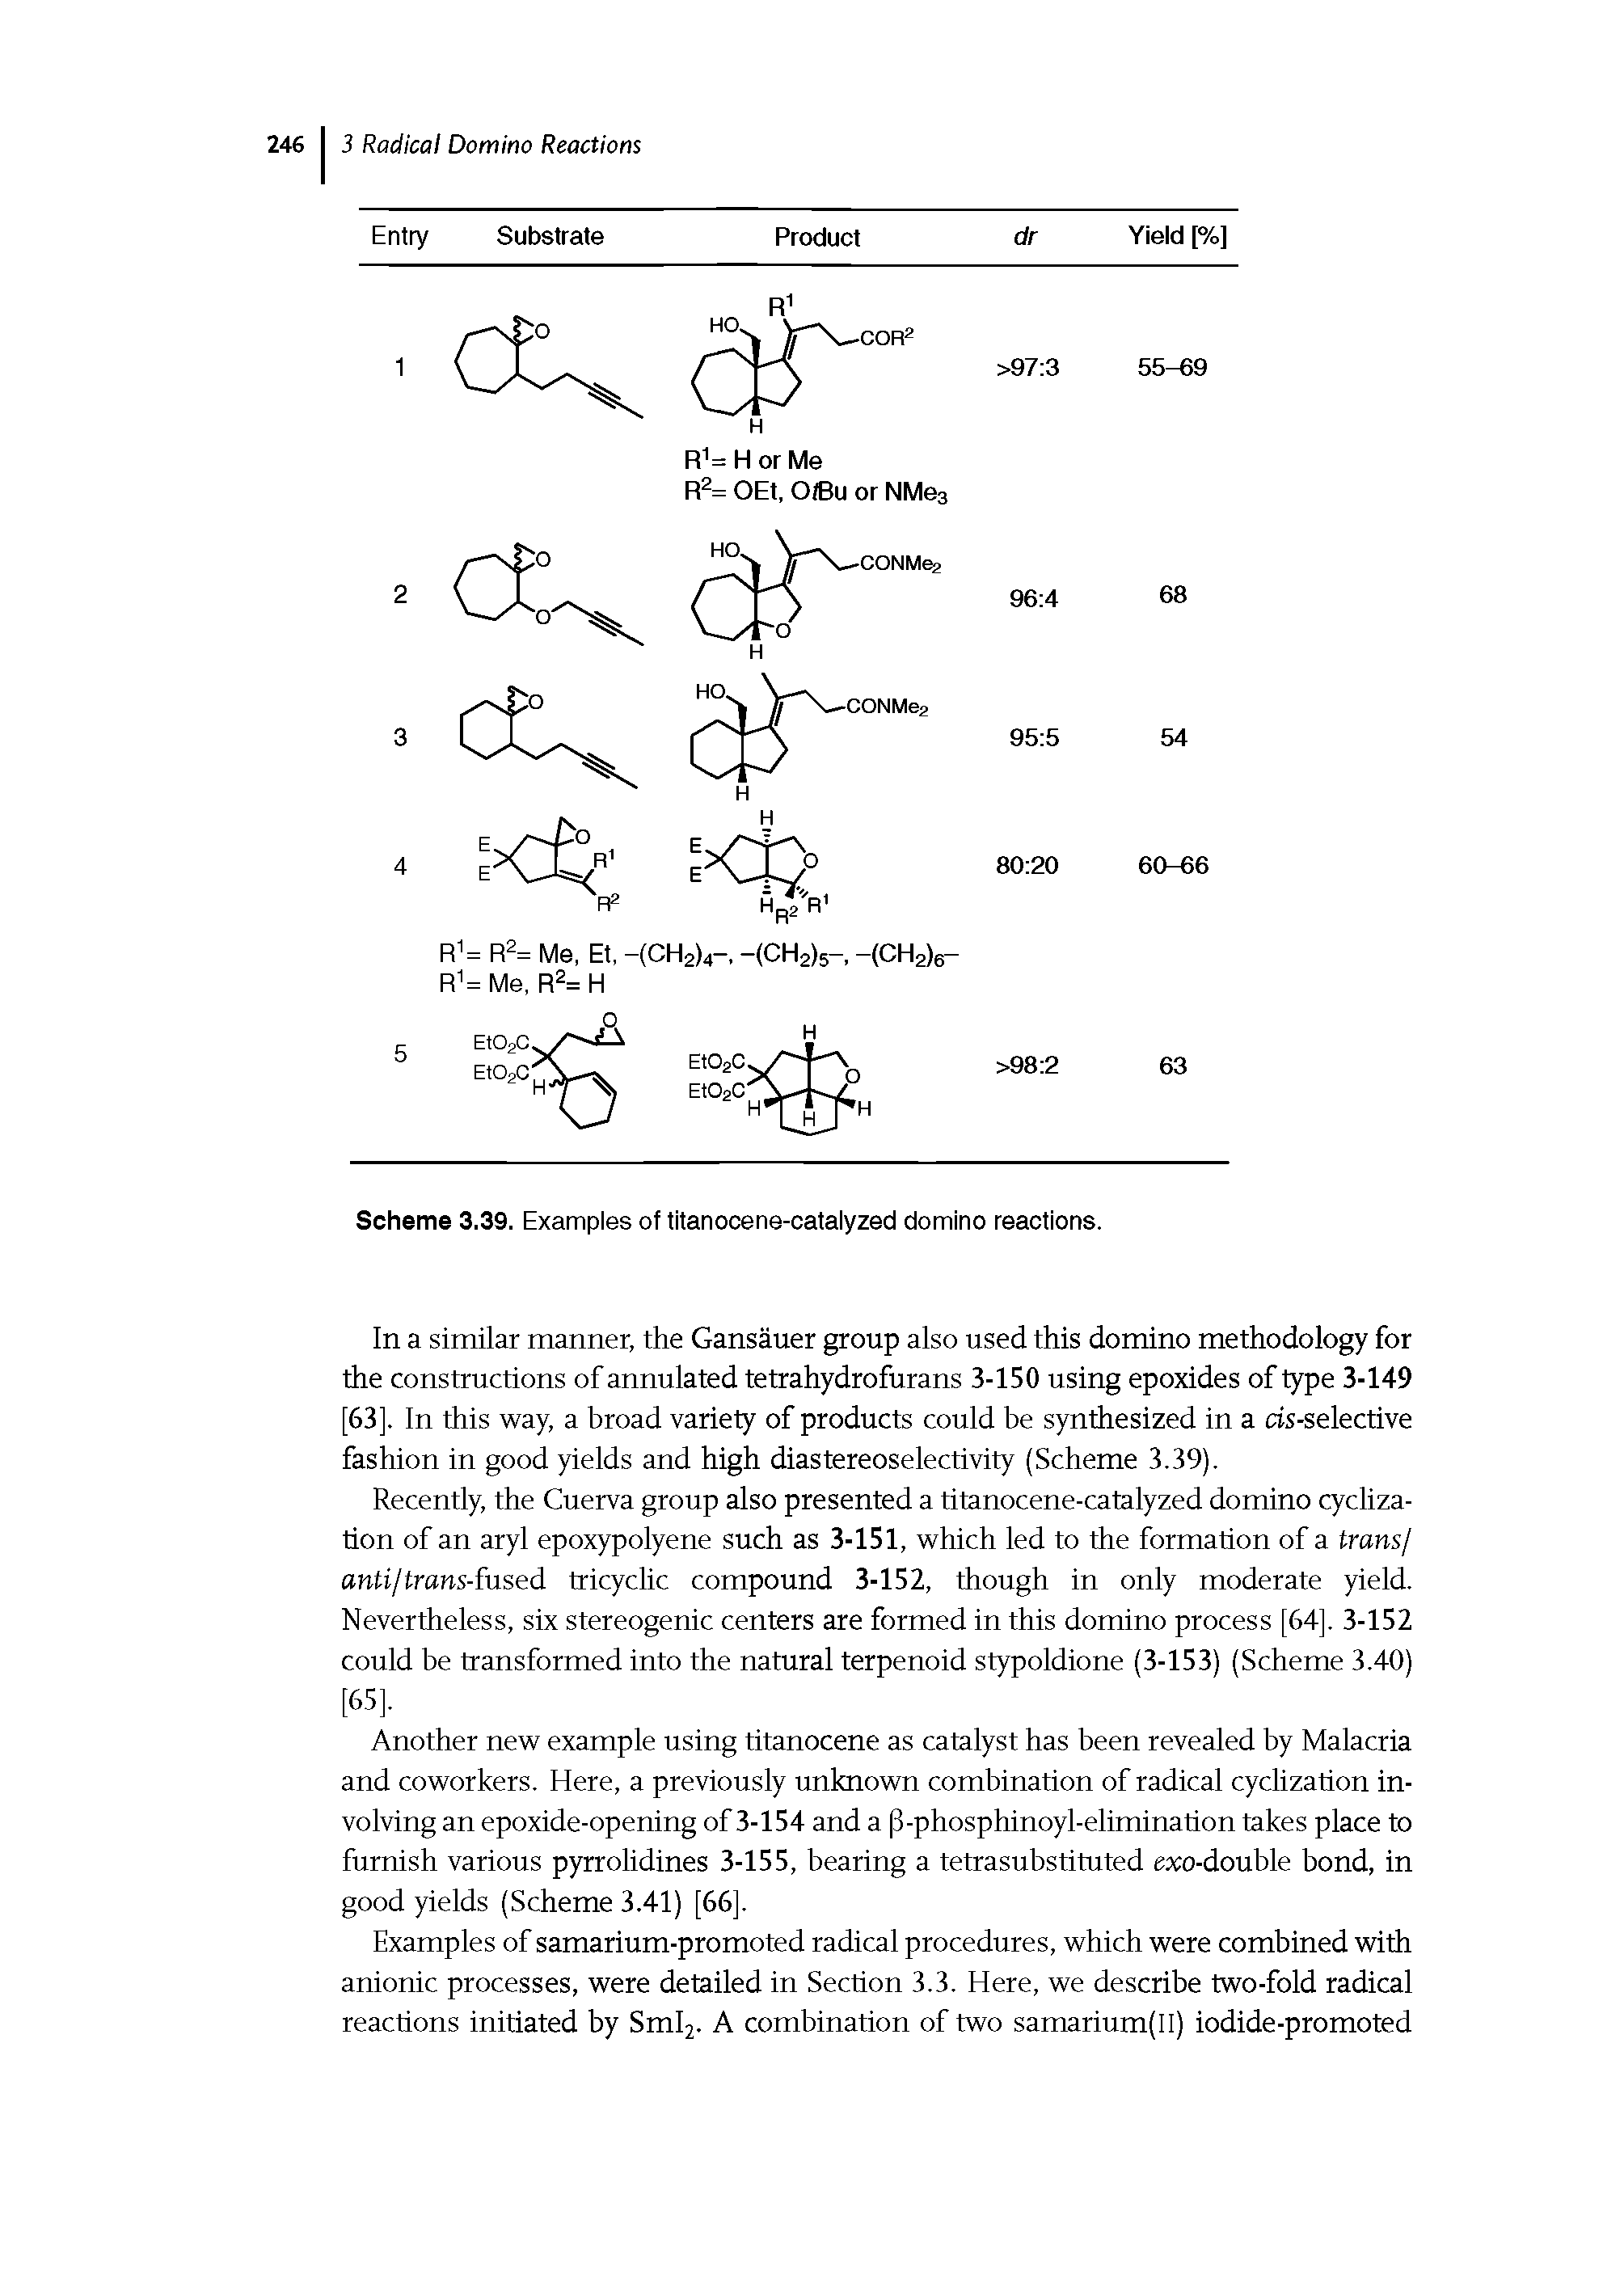 Scheme 3.39. Examples of titanocene-catalyzed domino reactions.